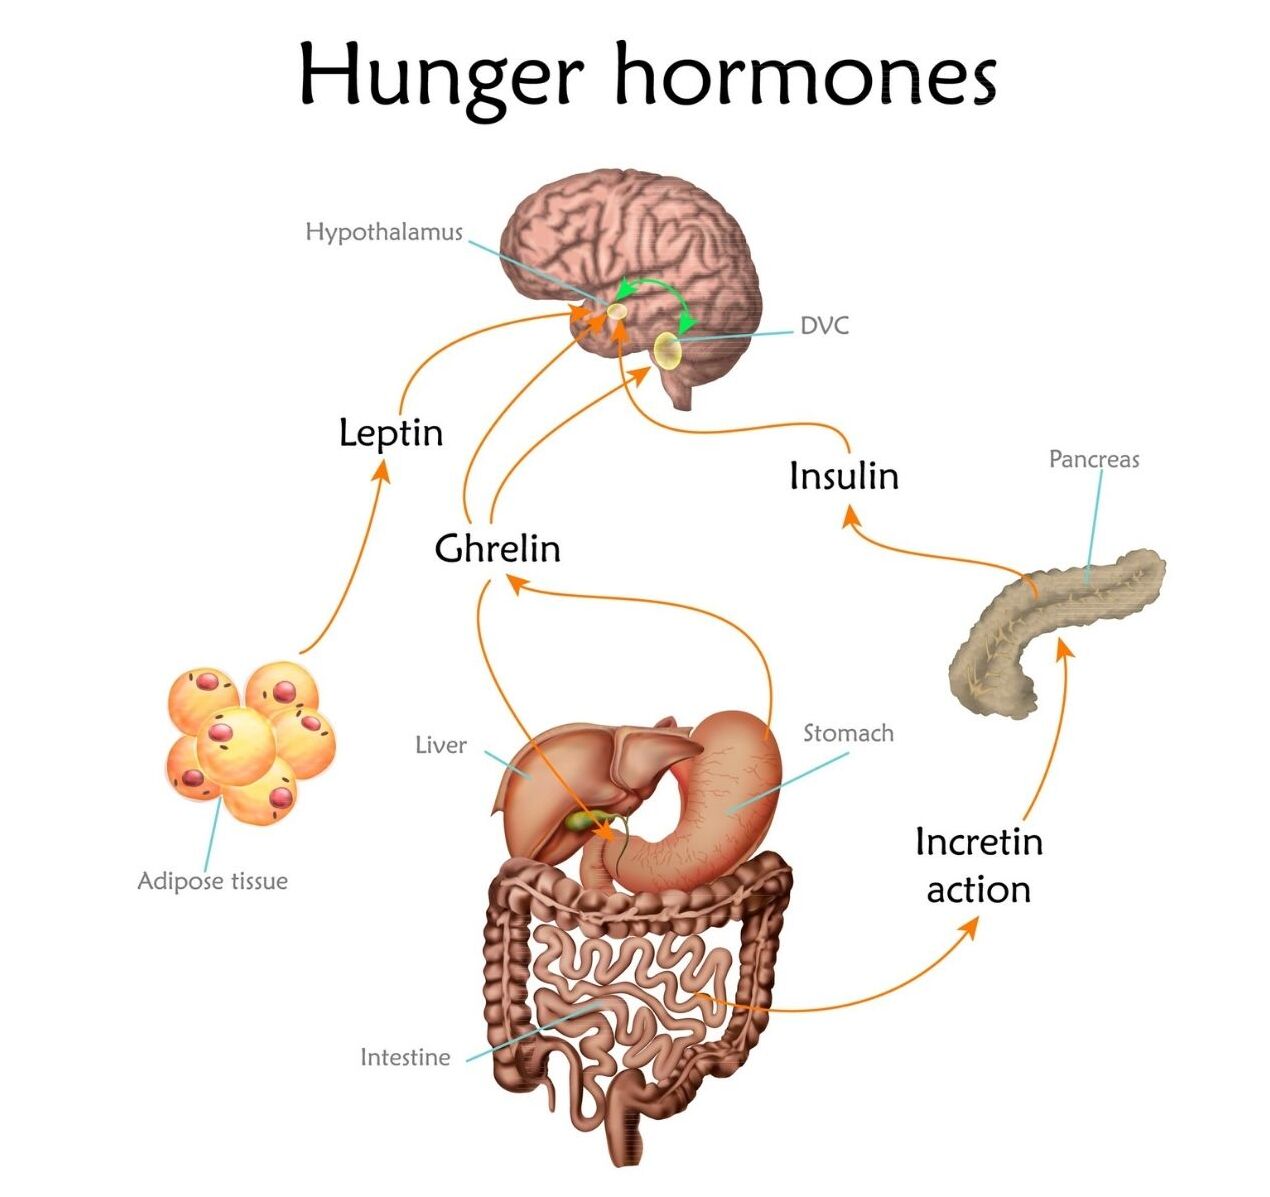 Hunger hormones